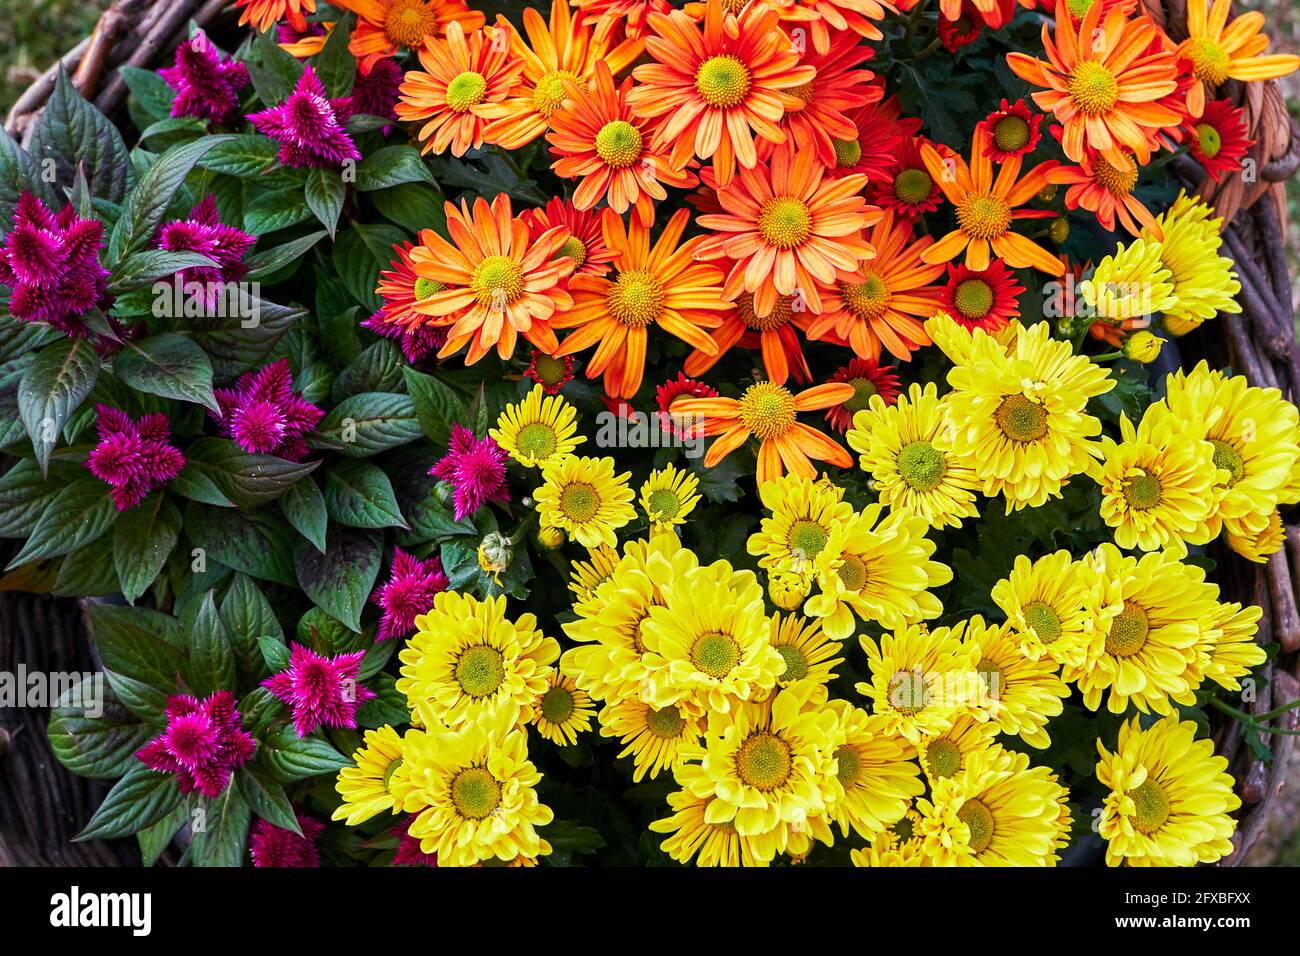 Mare di fiori in cesto di vimini con celosia viola in fiore, gerbara arancione e crisantemi gialli, come un tappeto colorato Foto Stock